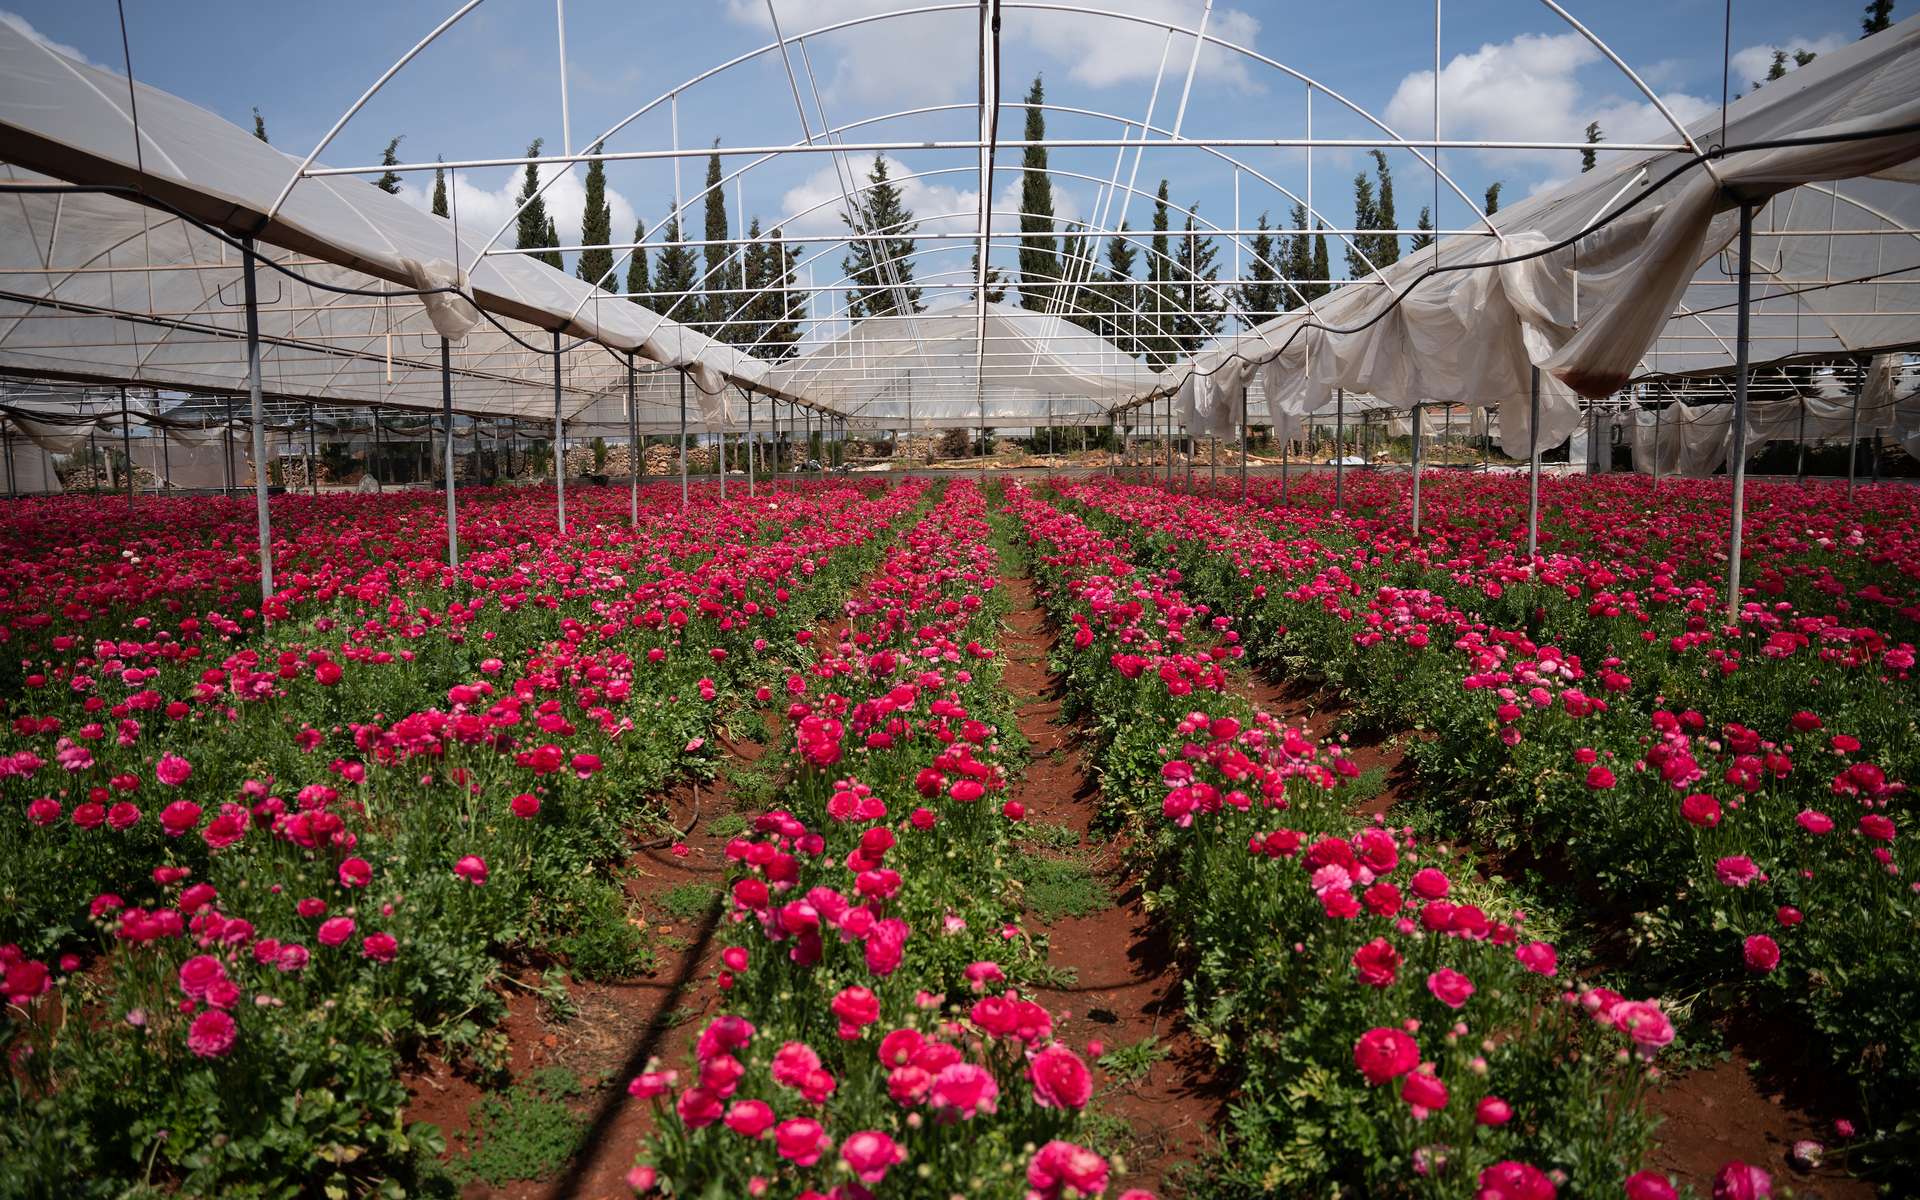 Saint-Valentin : le bilan carbone catastrophique des roses à l'heure de l'urgence climatique